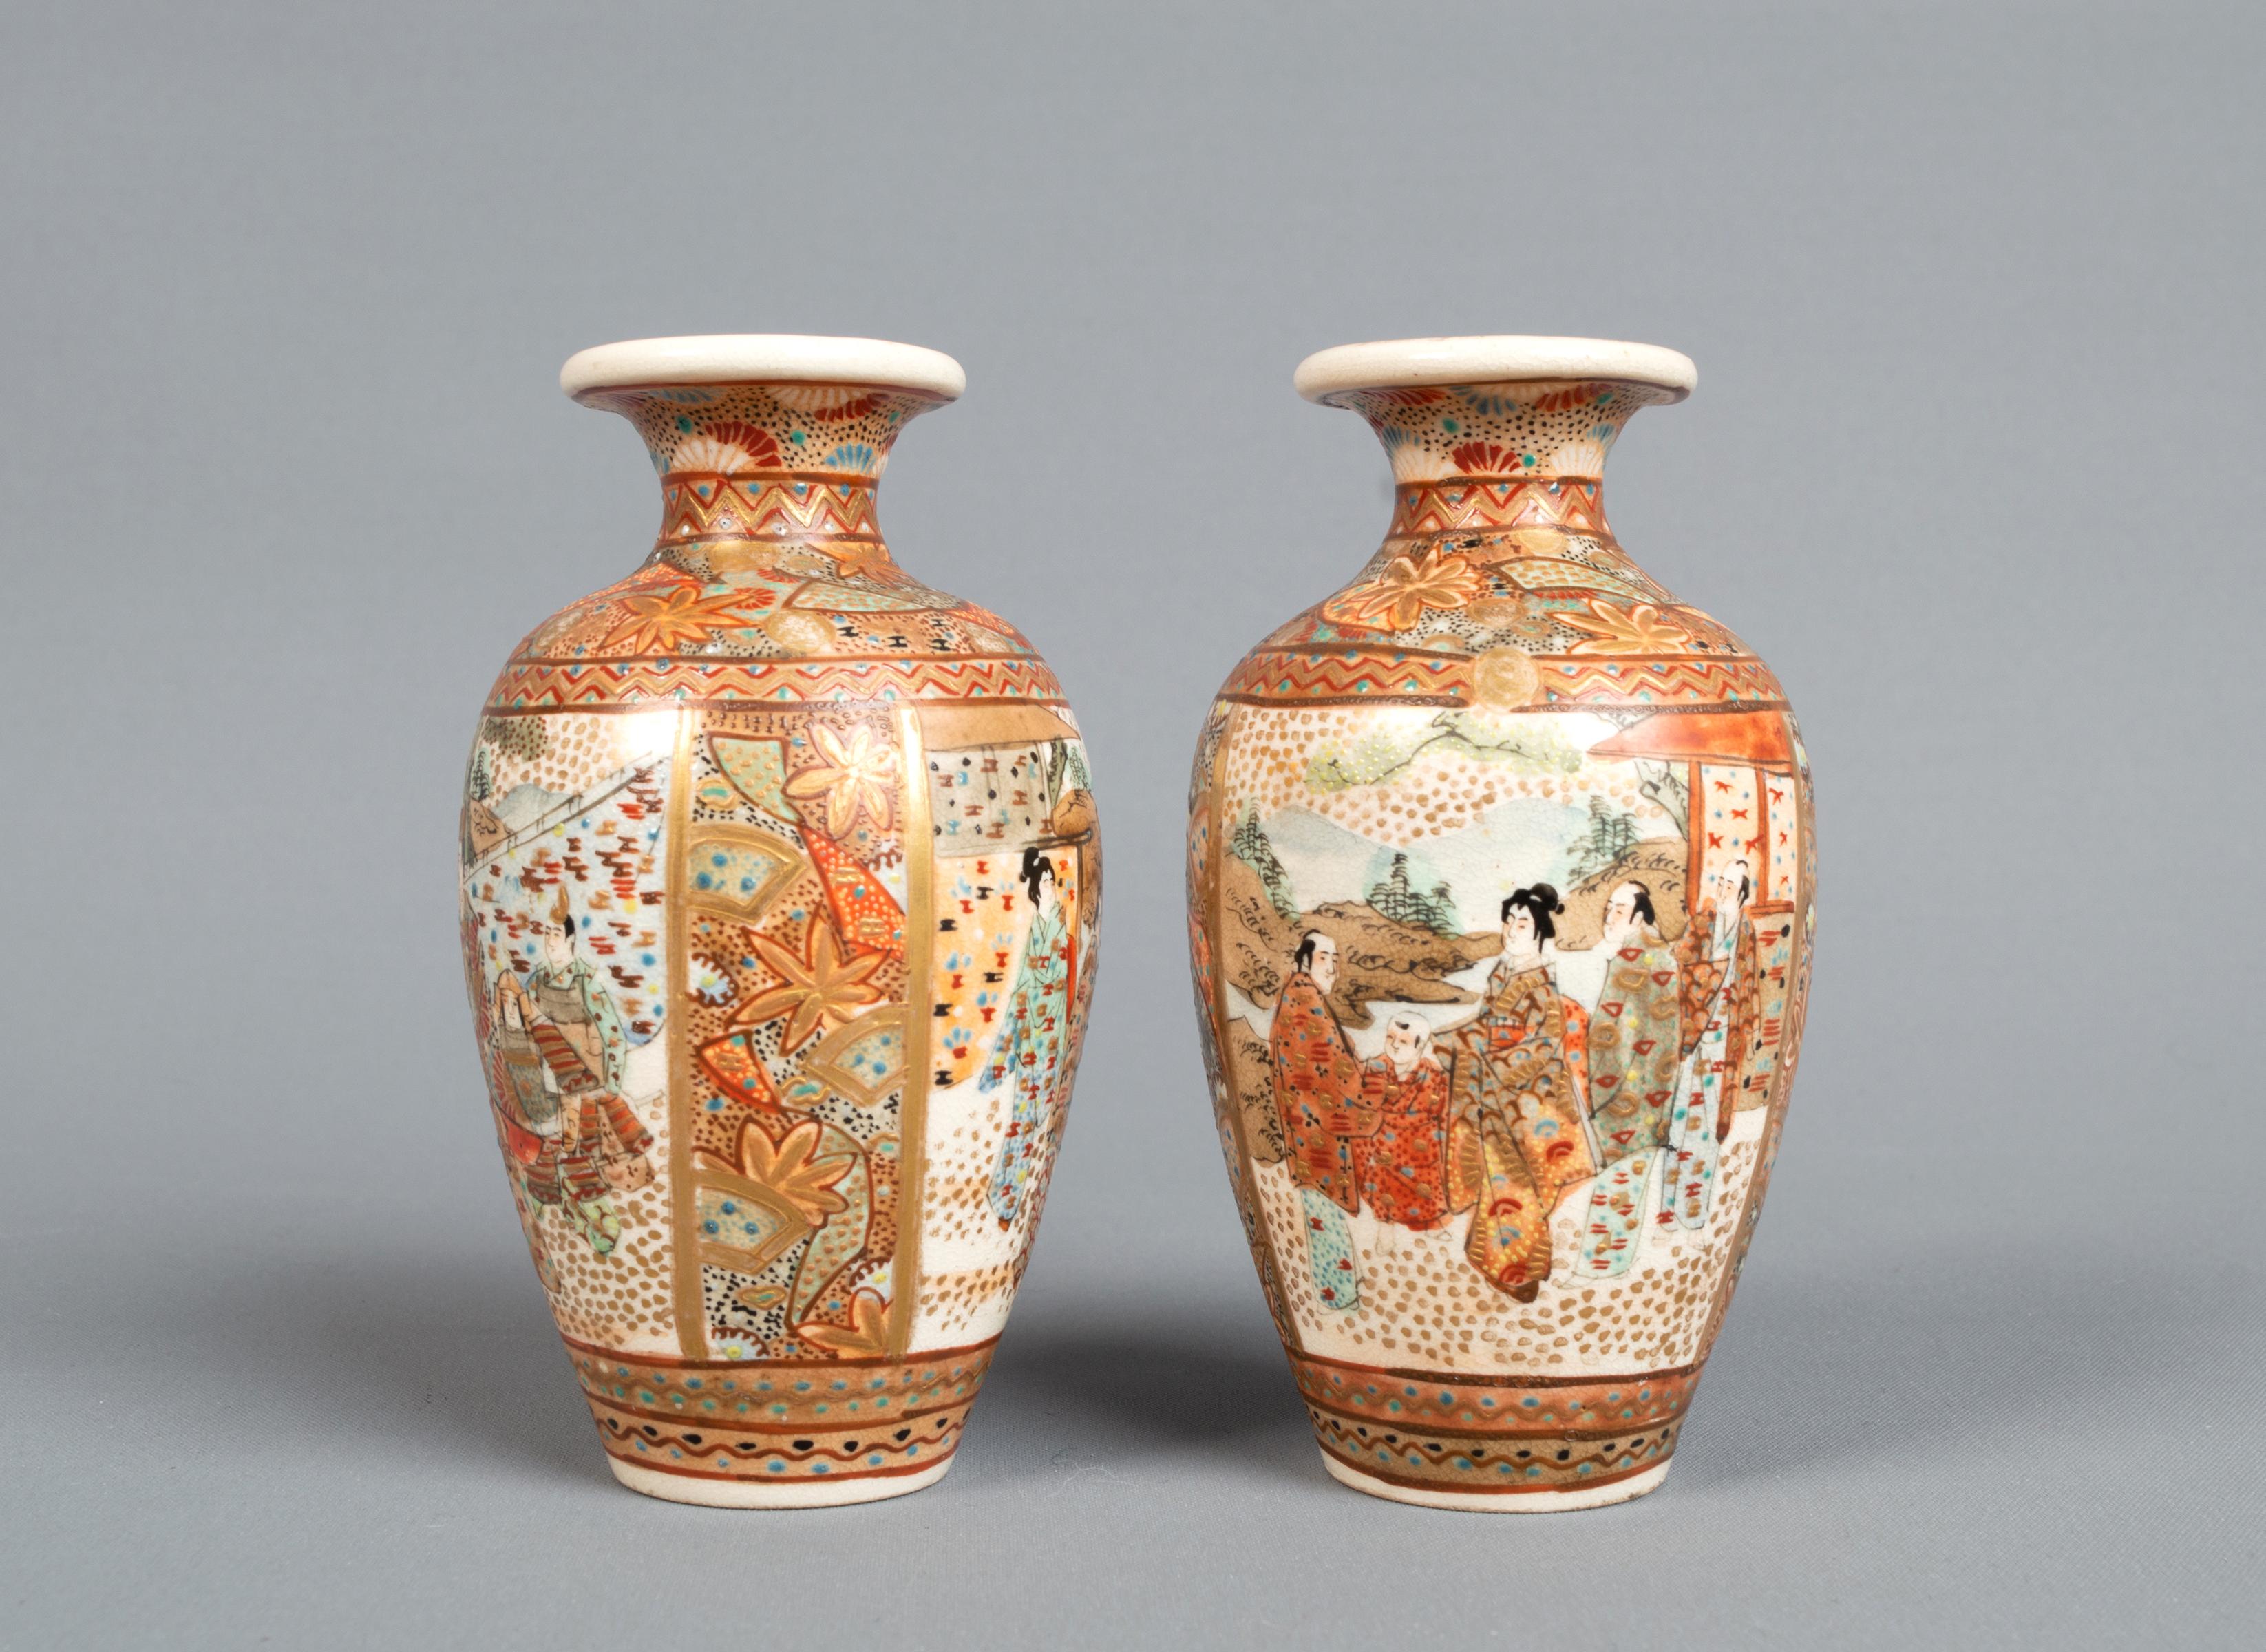 Paire de vases japonais miniatures Kutani du 19e siècle.
Période Meiji C.1880. 

Belle qualité, peinte à la main avec un panneau décoratif et figuratif en corail et doré. La base porte des marques de fabricants signées. 

En excellent état